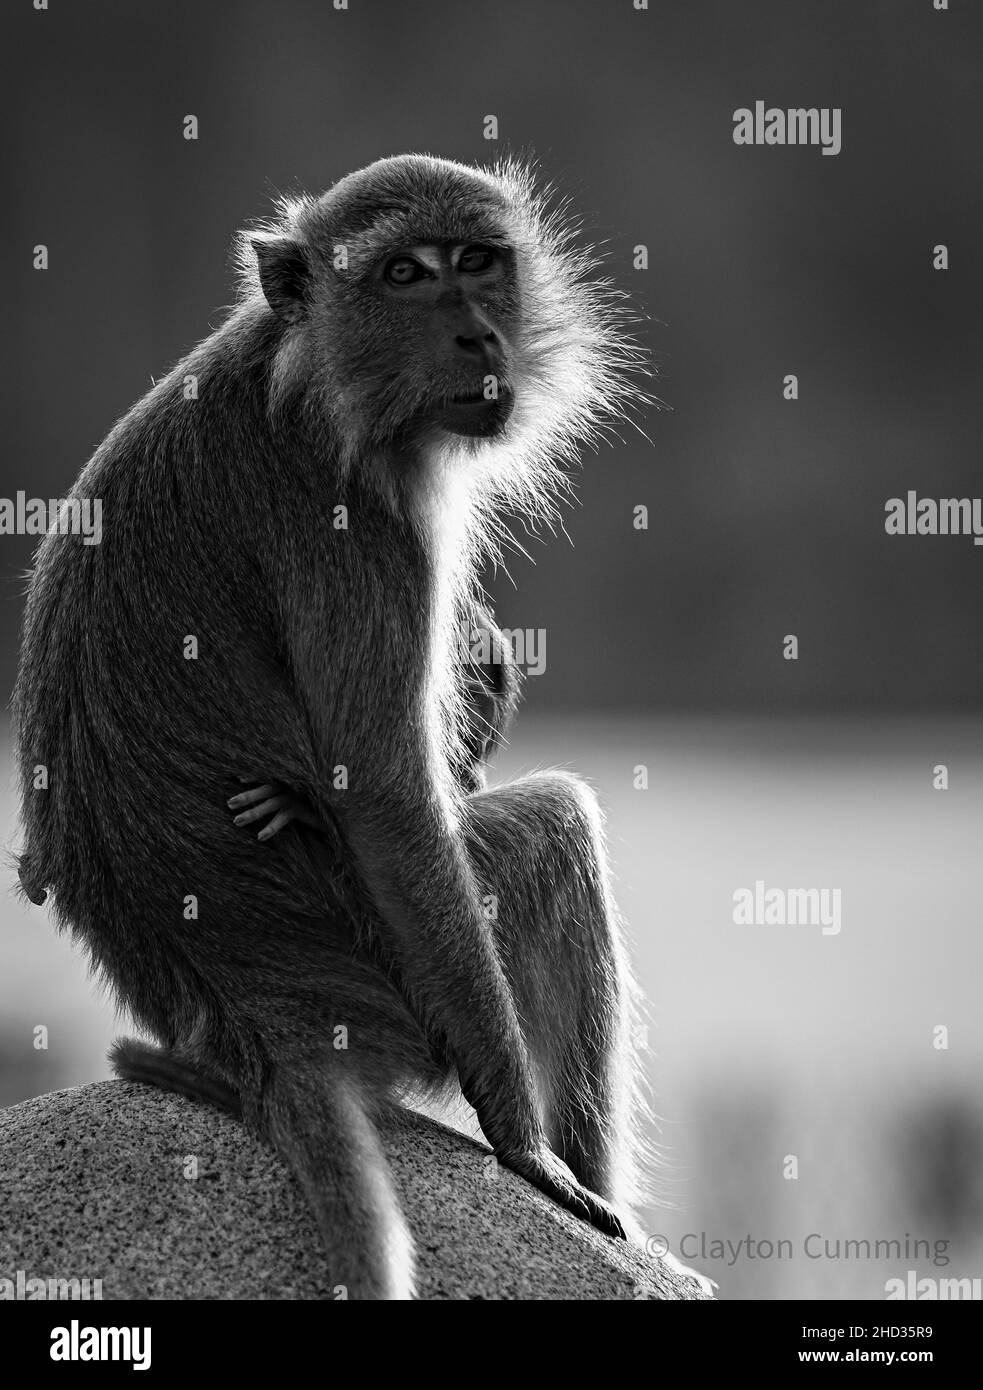 Vertikale Aufnahme eines makaken Affen in Schwarz und Weiß mit verschwommenem Hintergrund Stockfoto